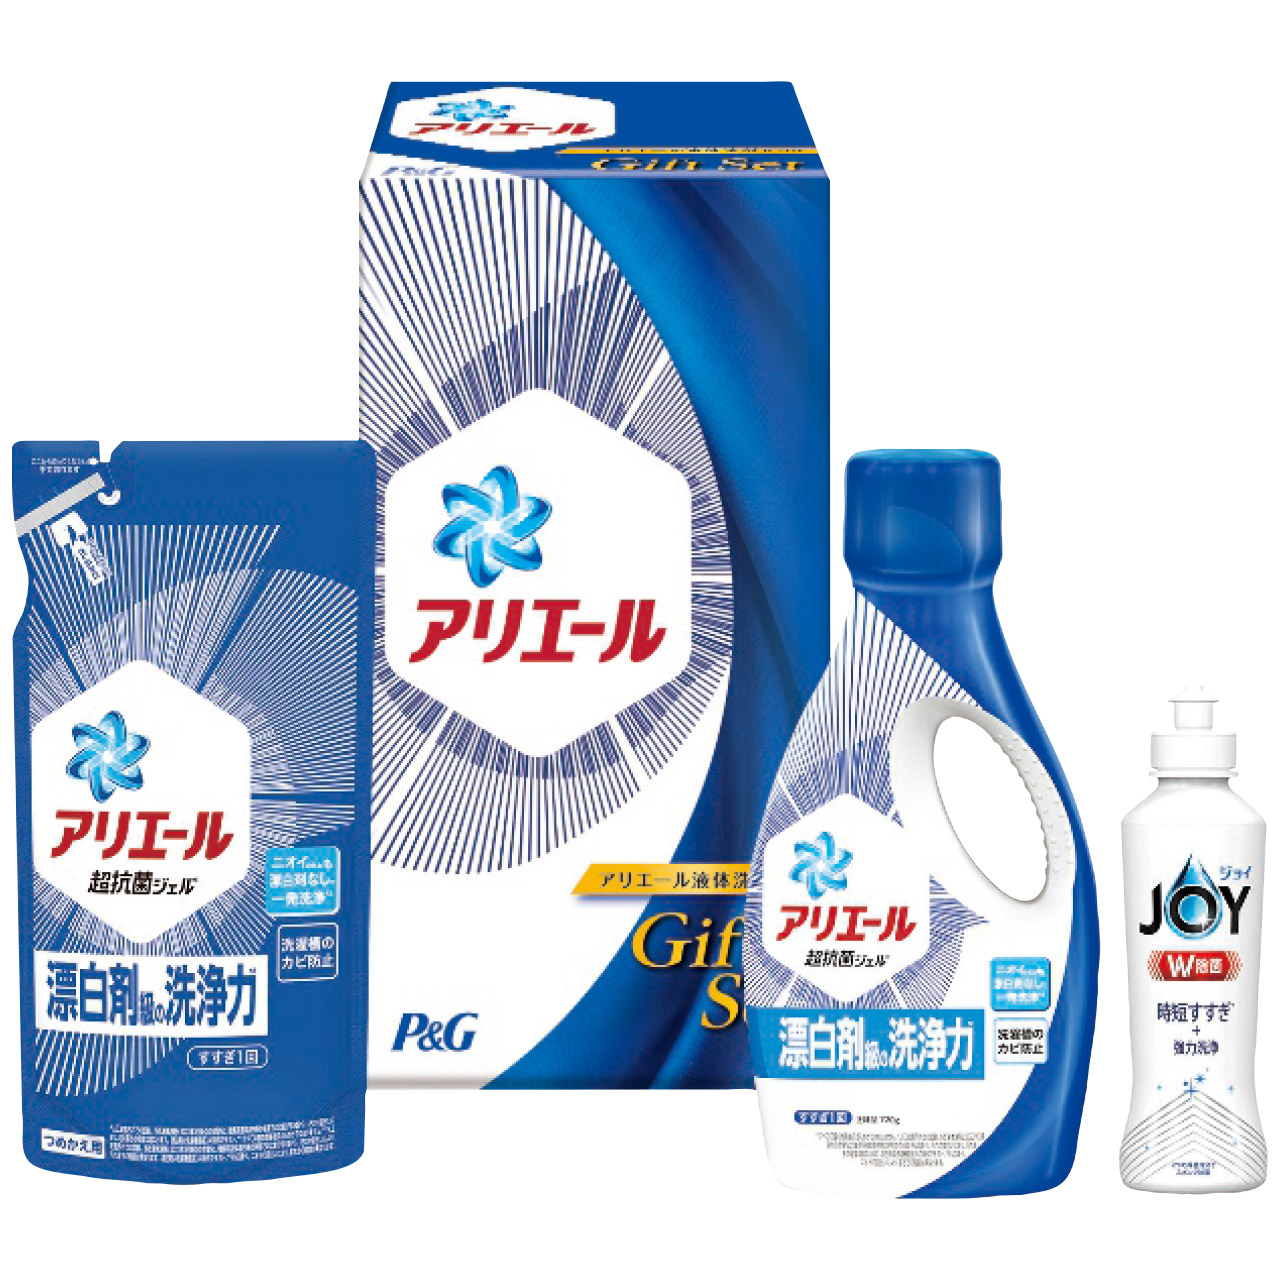 アリエール液体洗剤セット PGCG-15D